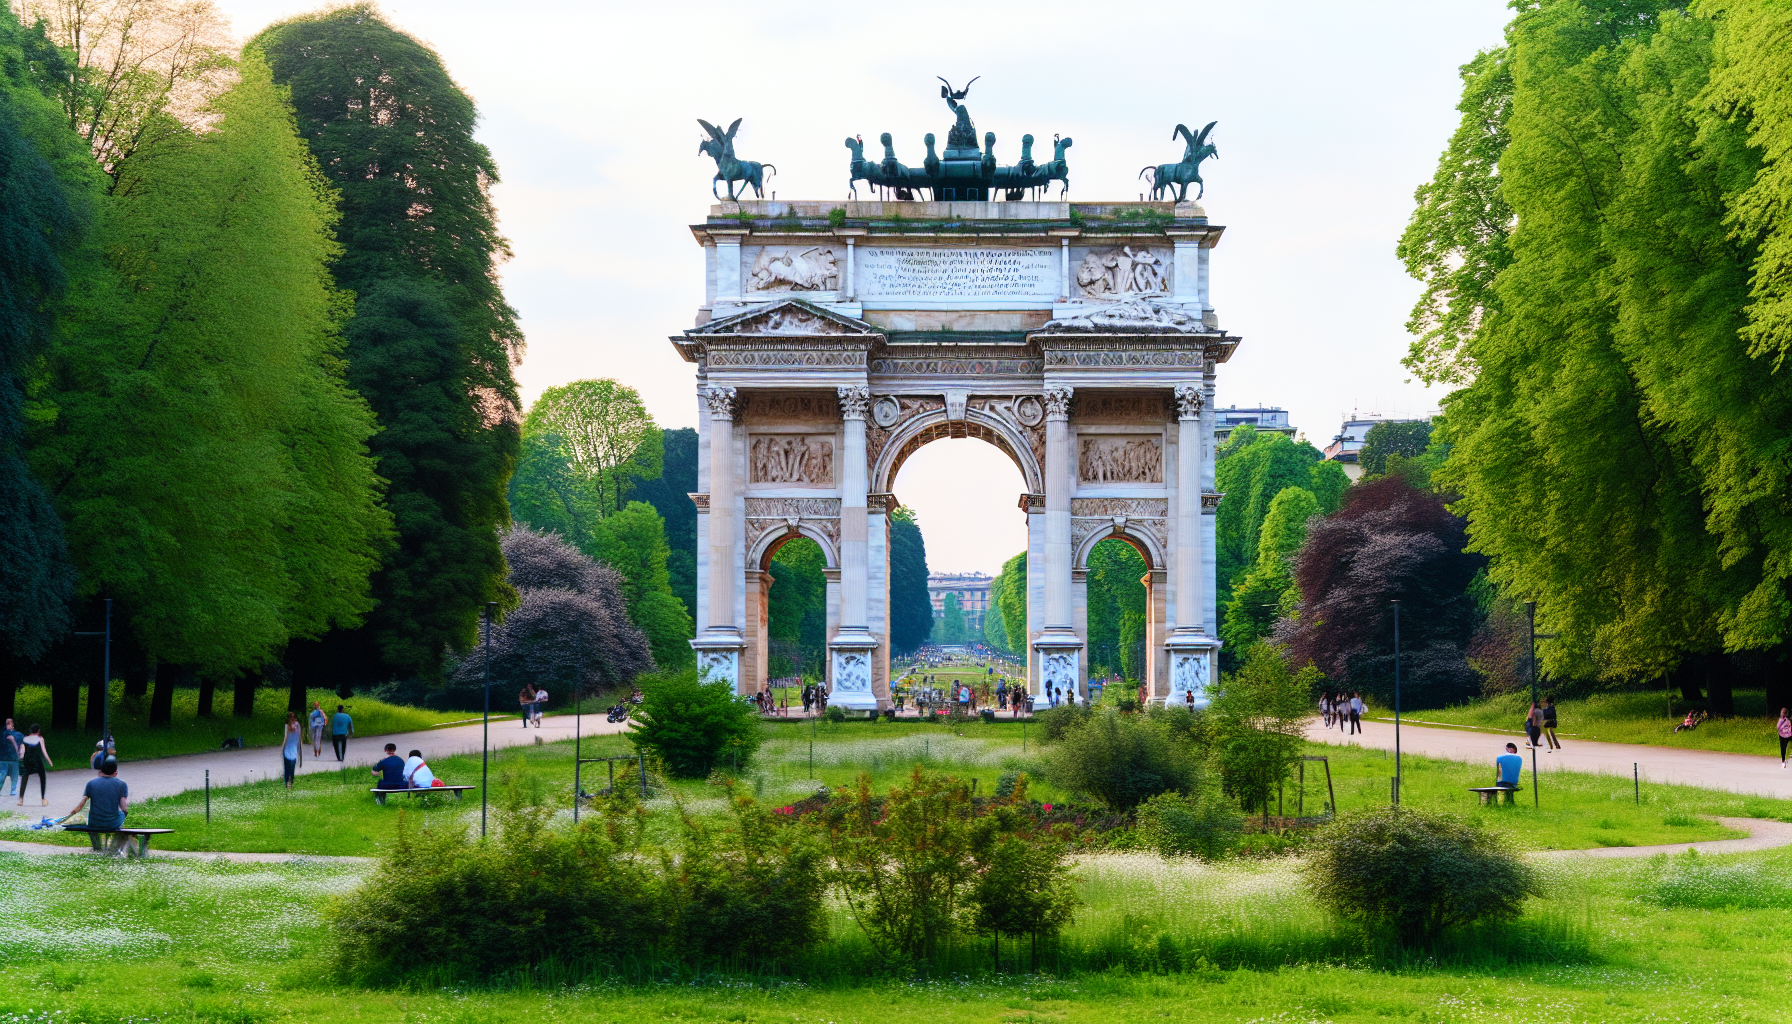 Sempione Park & Arco della Pace: Greenery Meets History